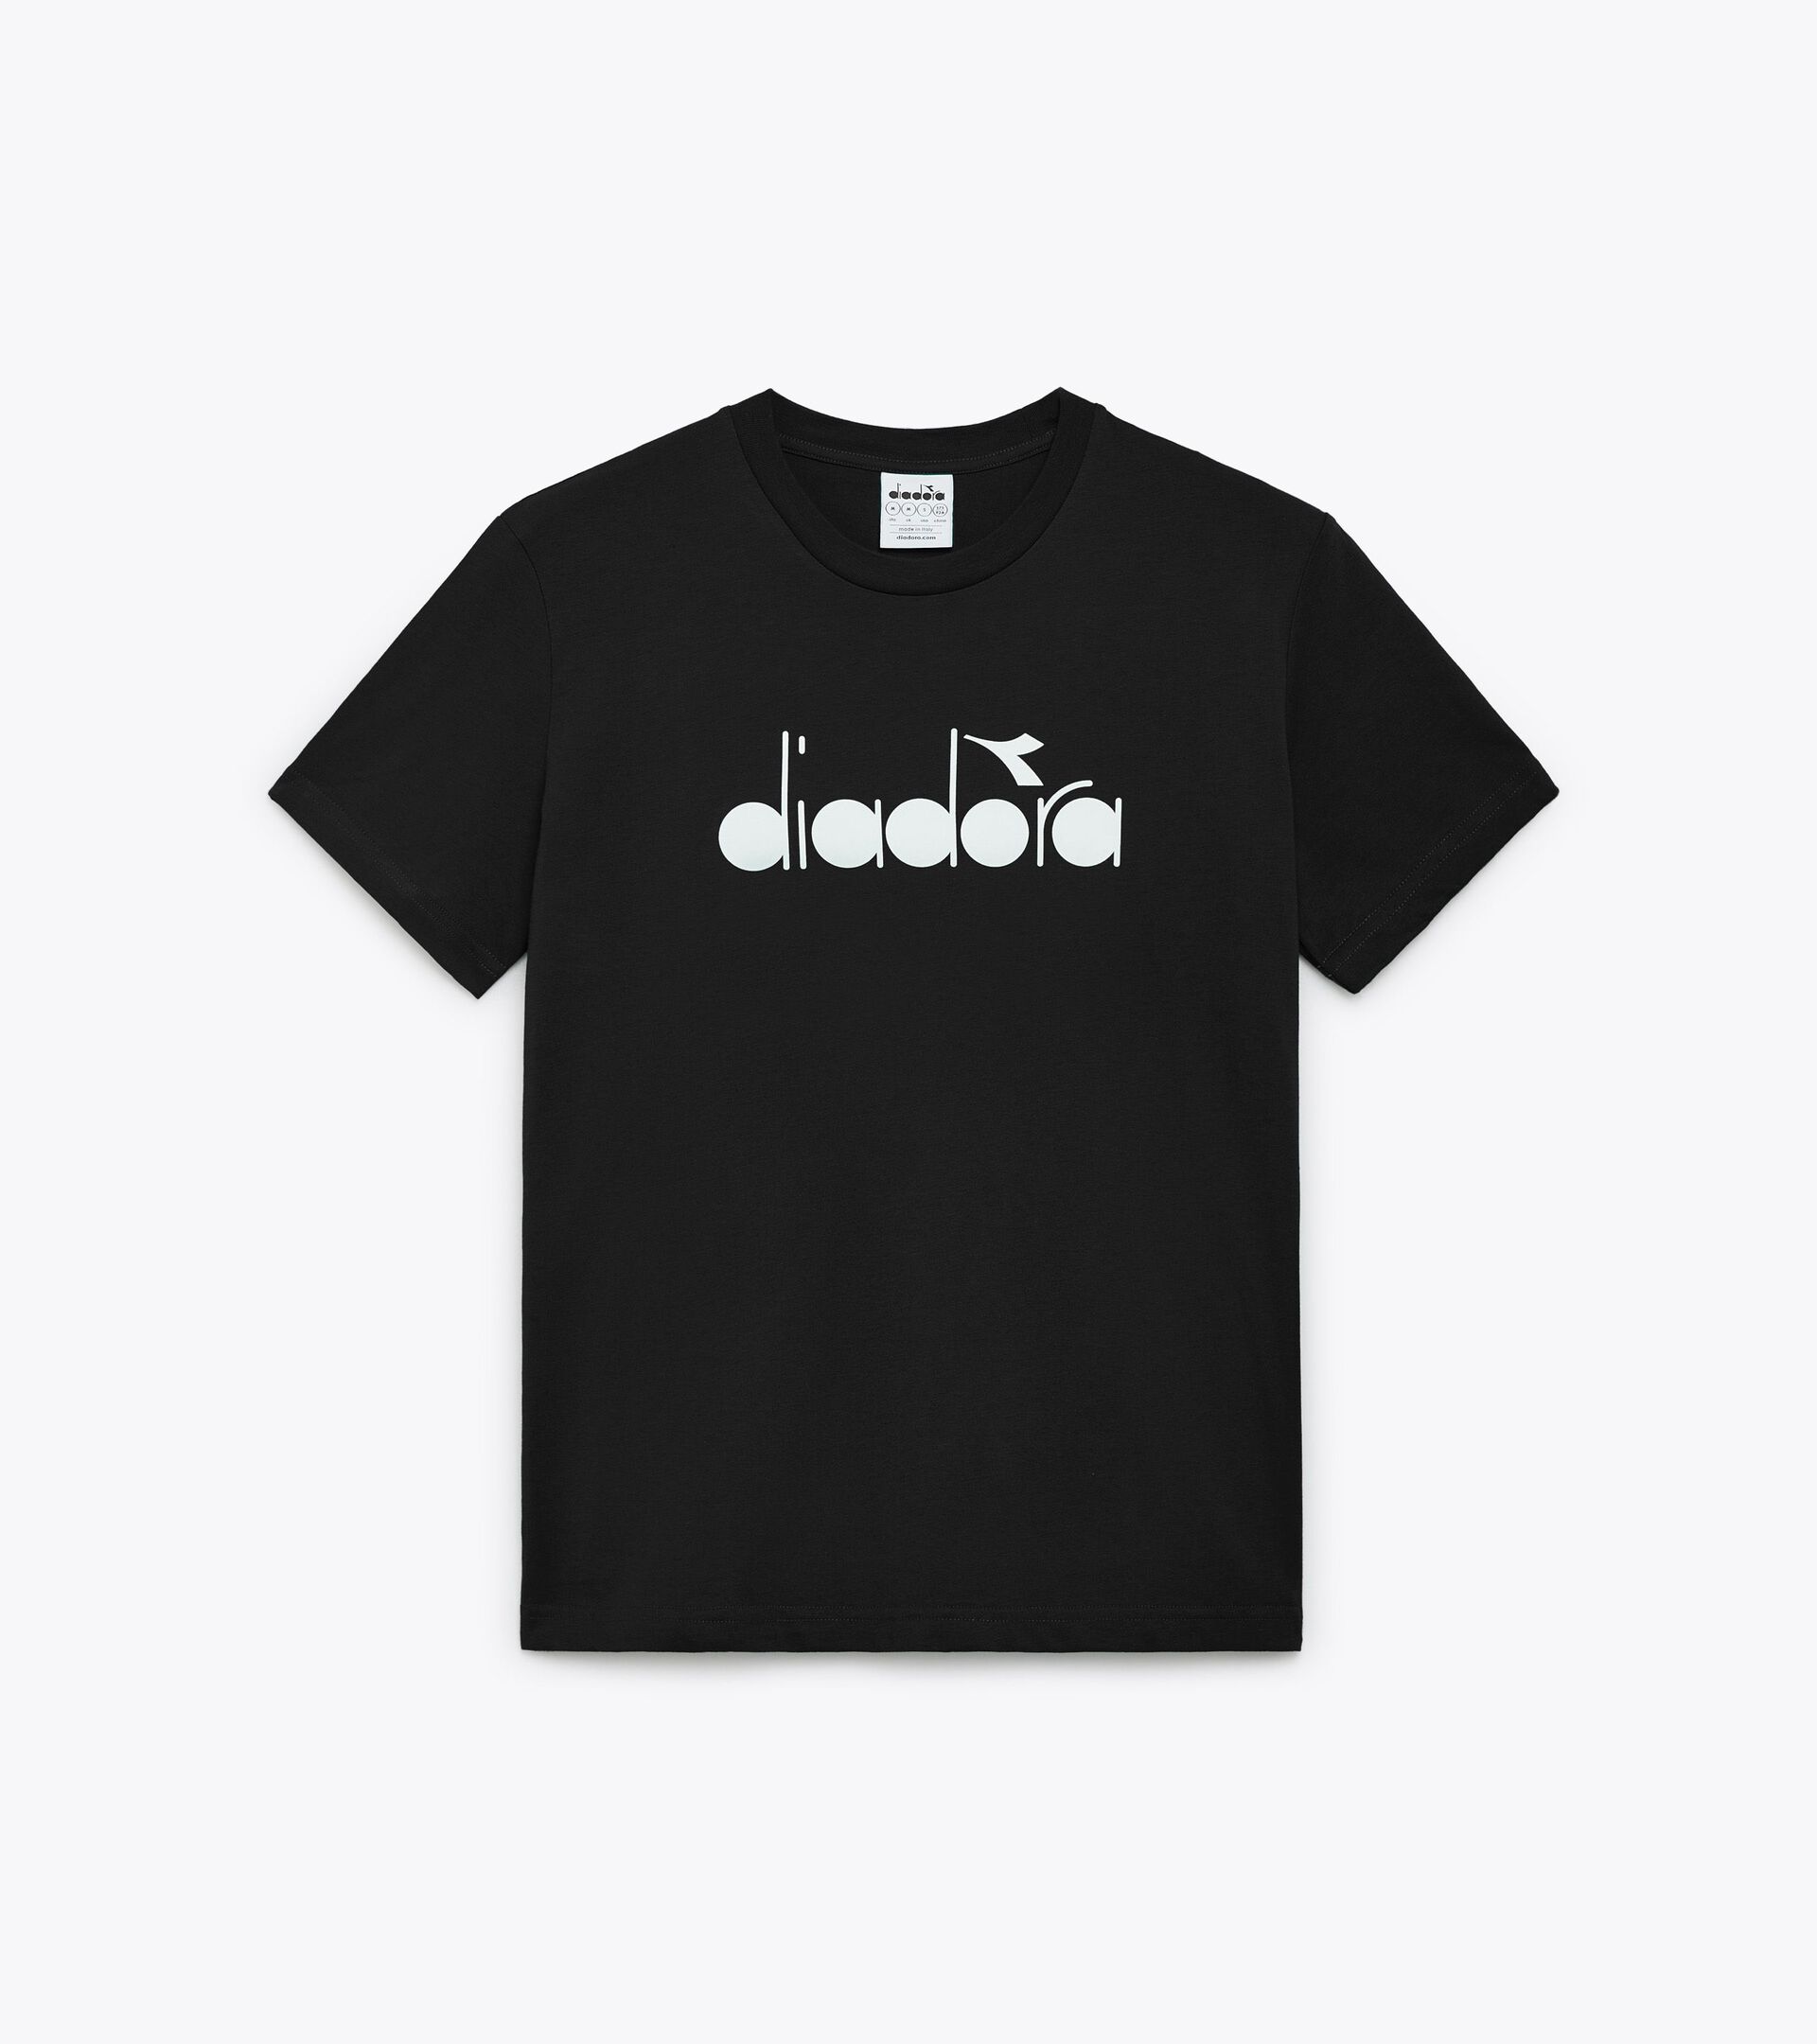 T-Shirt – Made in Italy - Gender Neutral  T-SHIRT SS LOGO SCHWARZ - Diadora